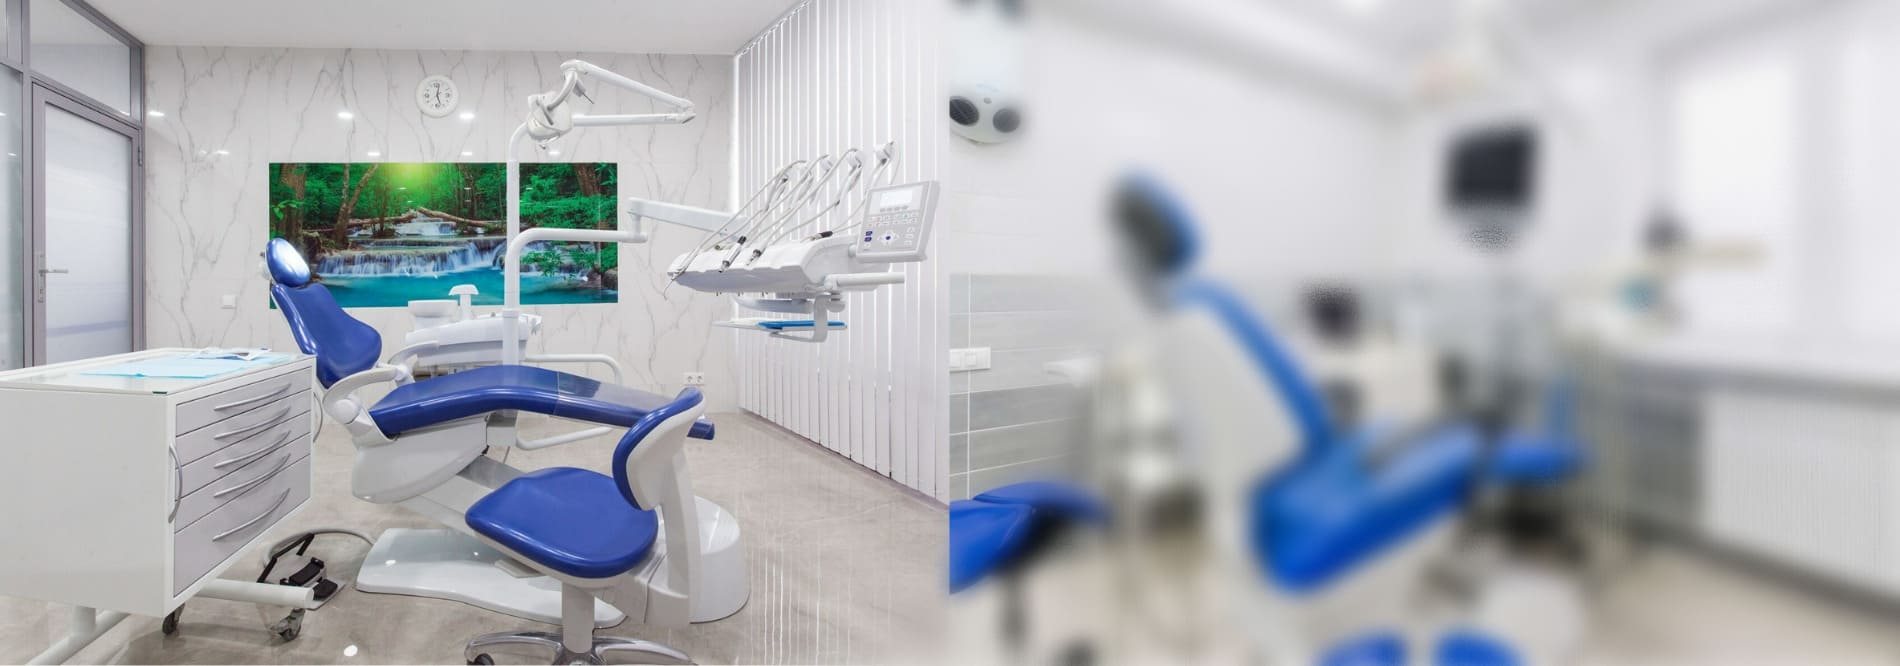 Проектирование стоматологии в Краснодаре Керчь